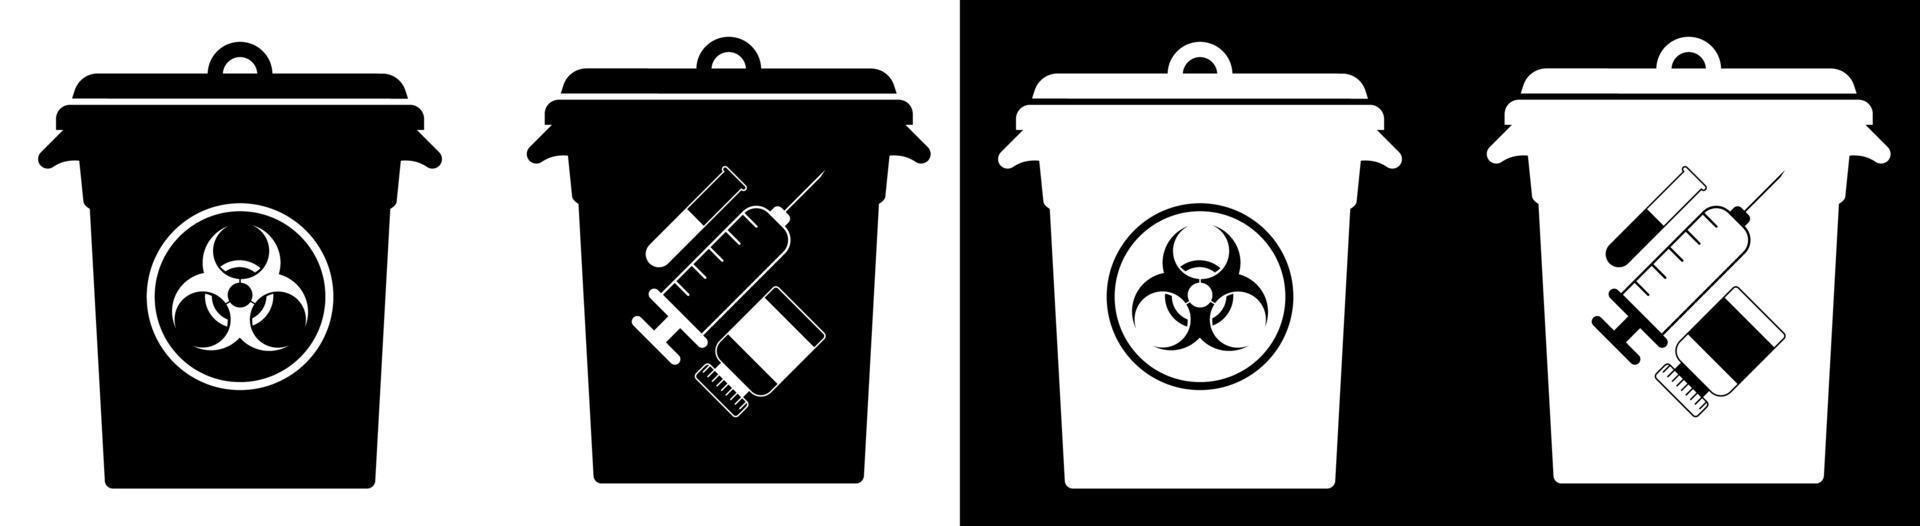 botes de basura con carteles de residuos peligrosos. eliminación de materiales peligrosos, tratamiento de residuos industriales. cuidando el medio ambiente vector